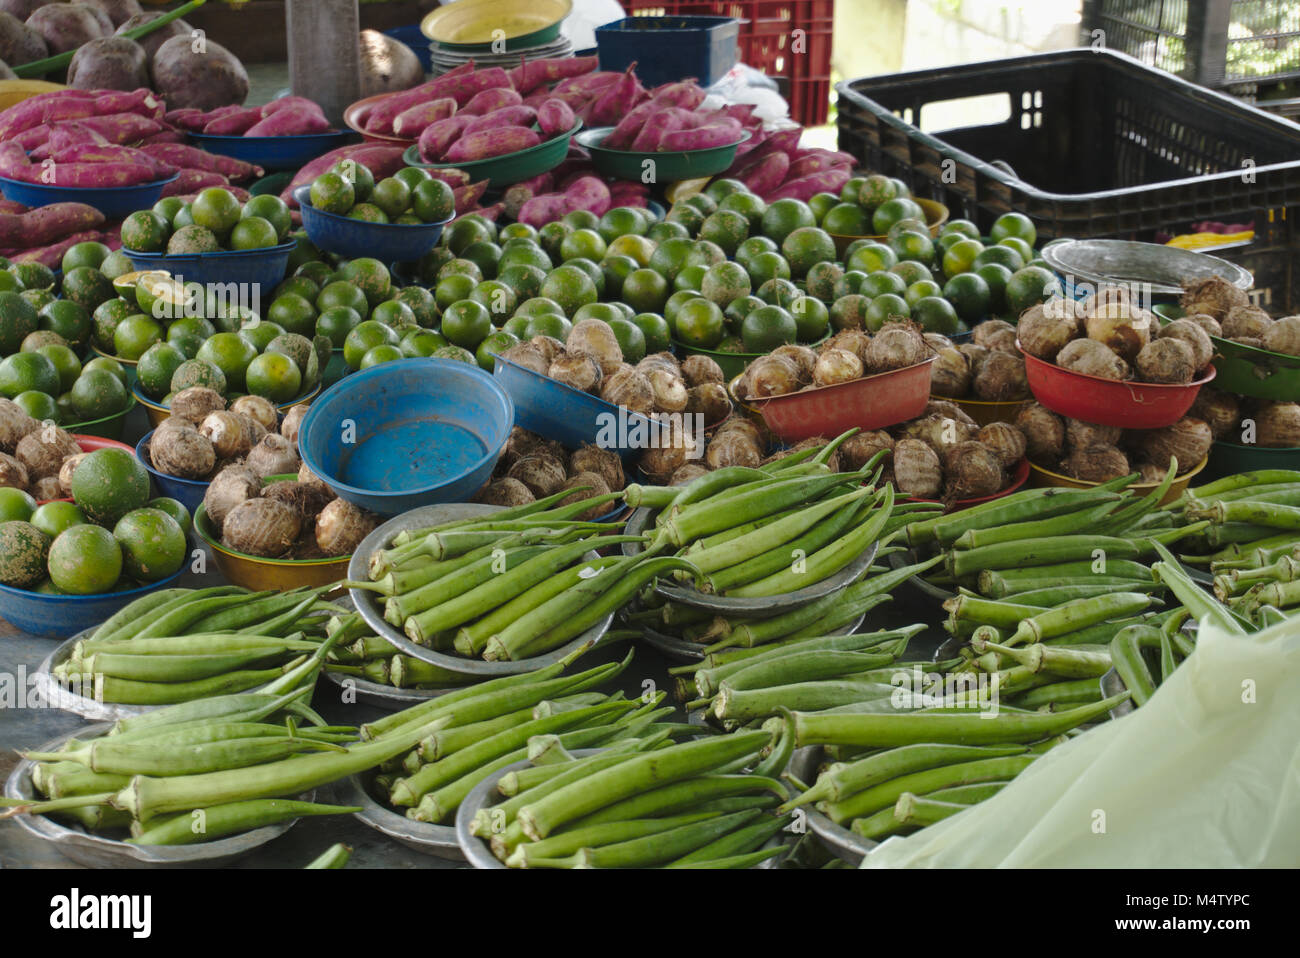 Le gombo, l'igname, la chaux, et les agriculteurs de pommes de terre rouge à l'échoppe de marché. Banque D'Images